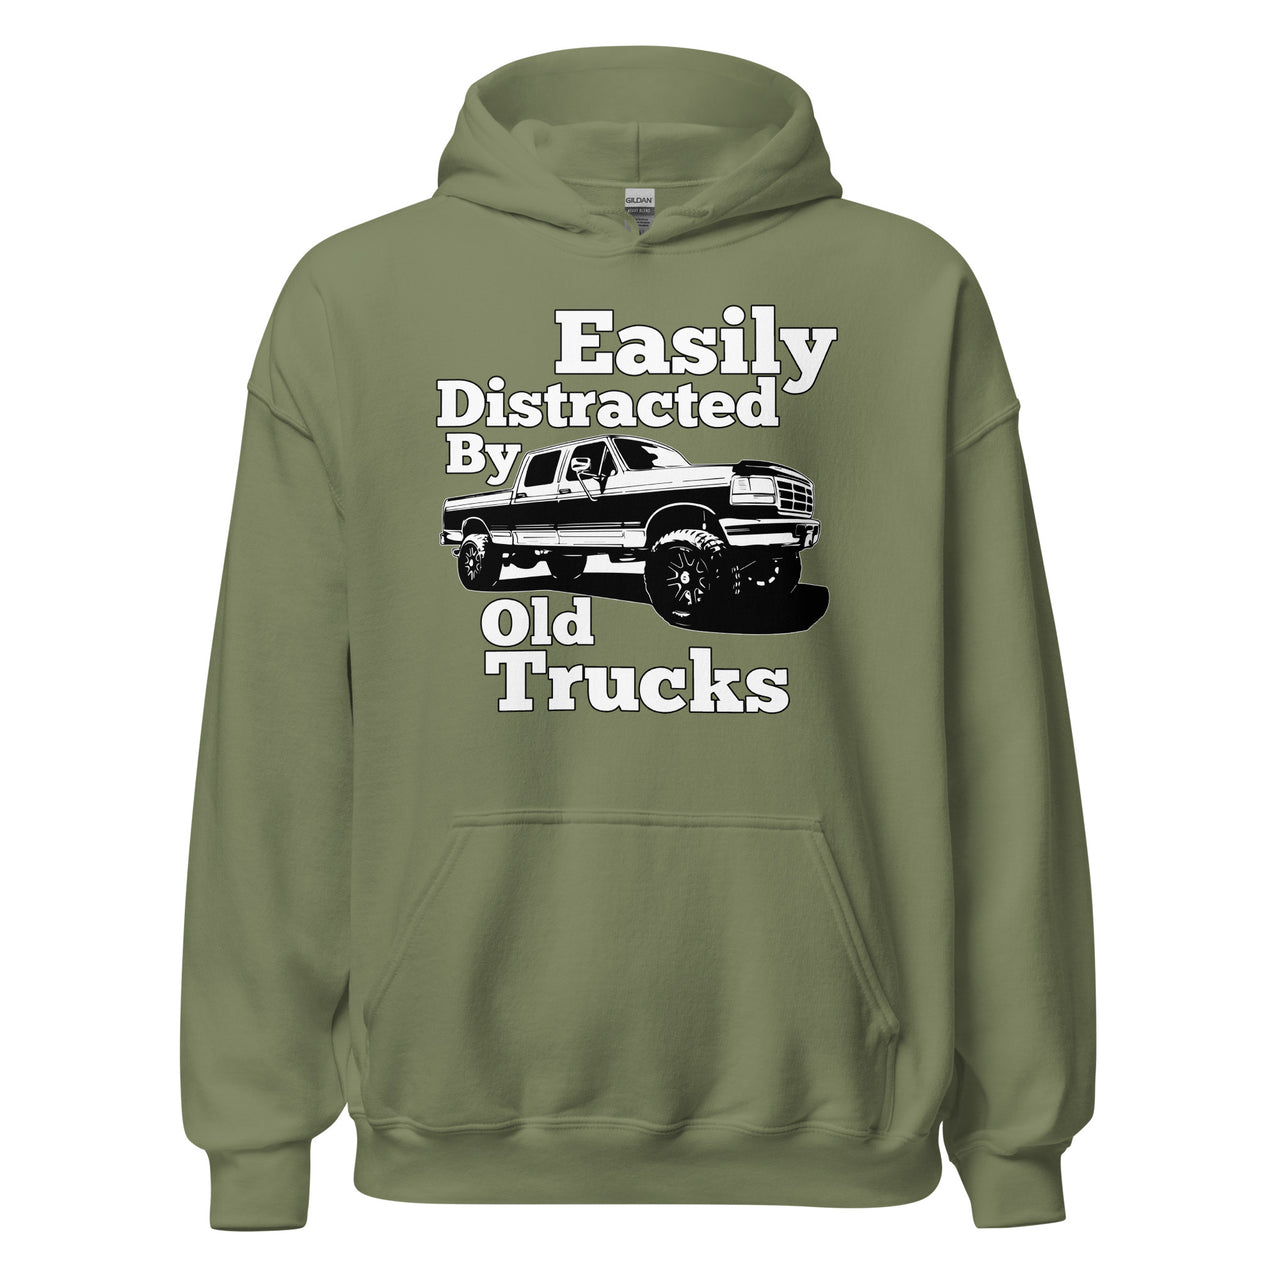 OBS Truck Hoodie Sweatshirt - Easily Distracted By Old Trucks